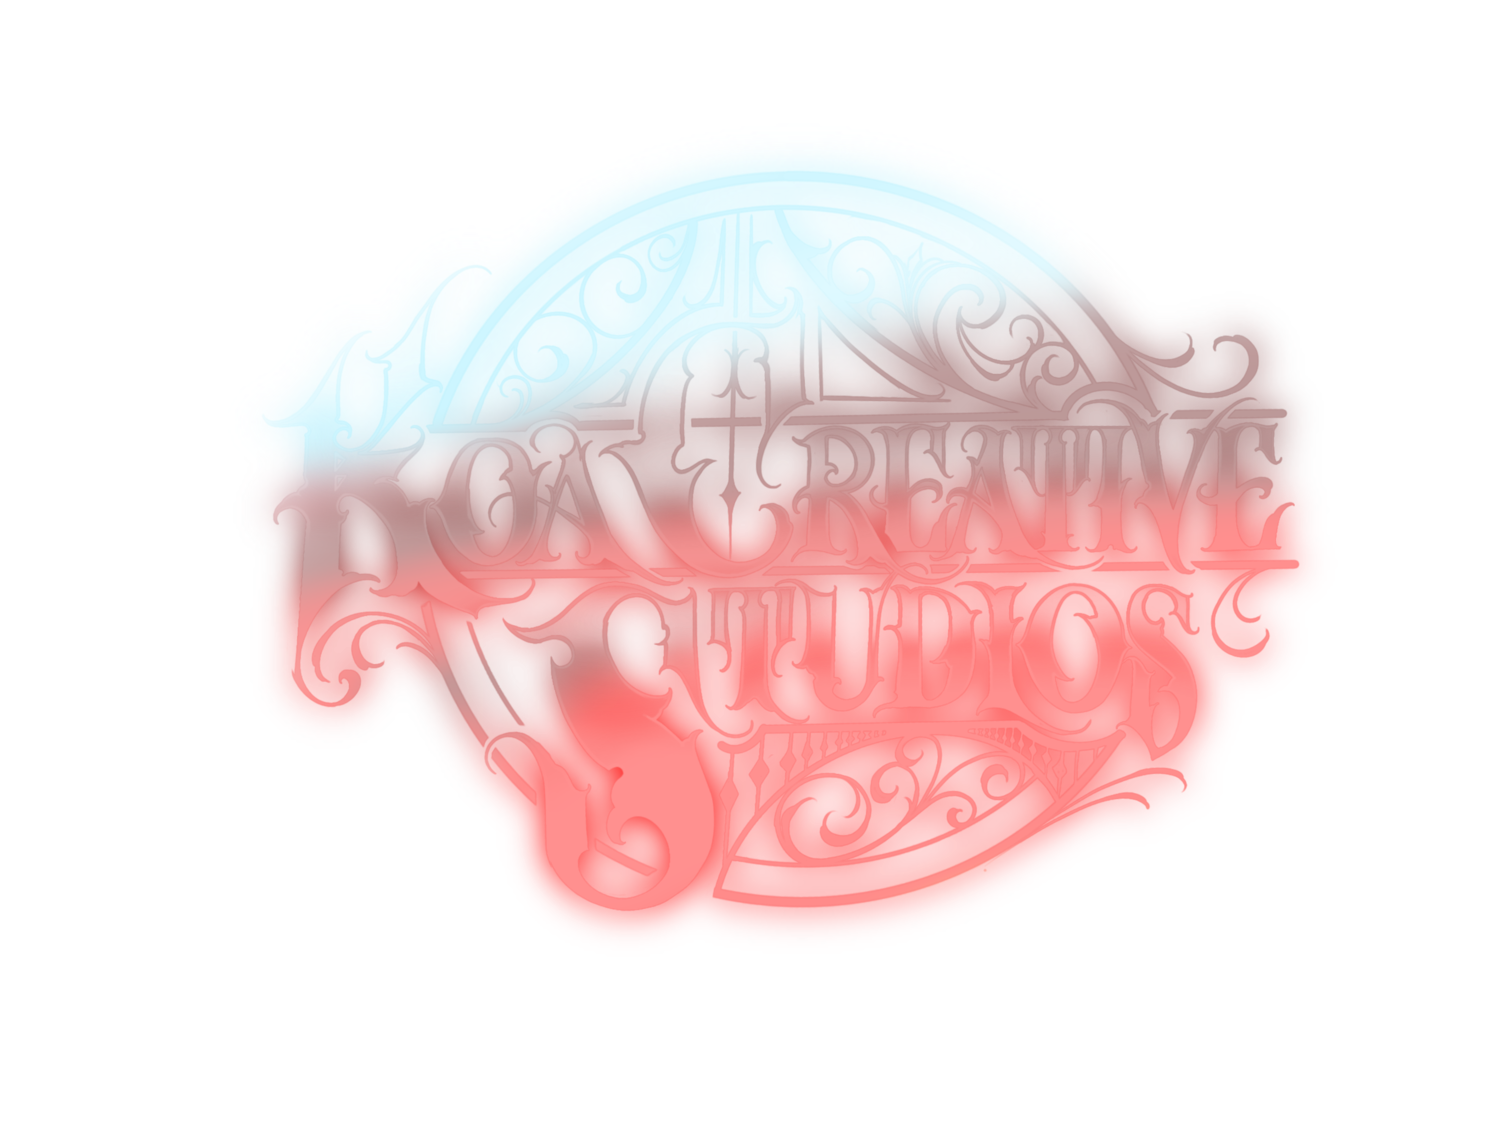 Koa Creative Studios